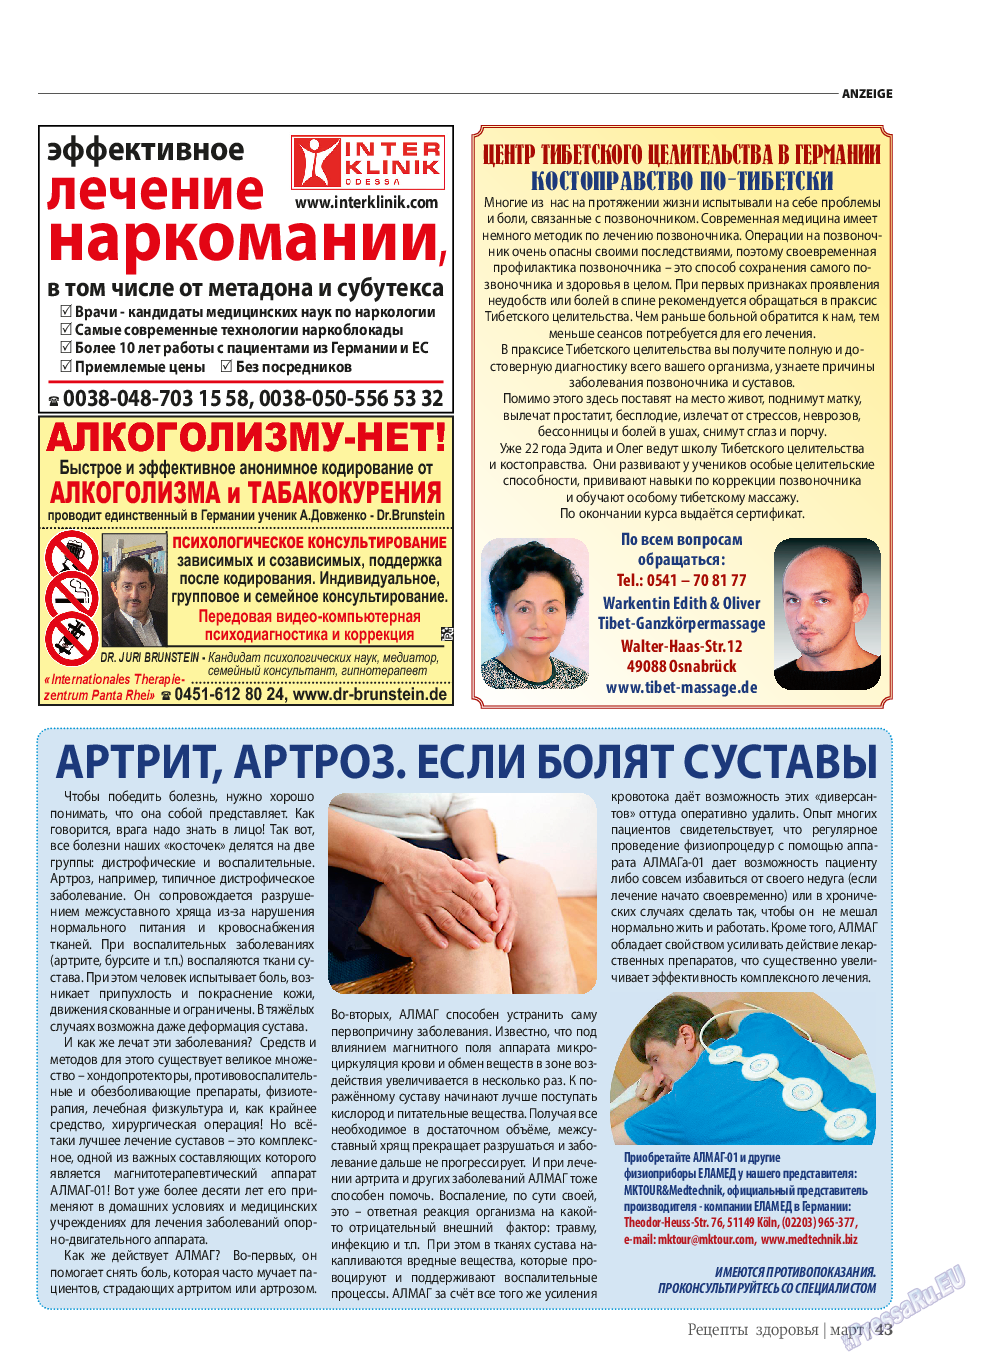 Рецепты здоровья, журнал. 2014 №58 стр.43